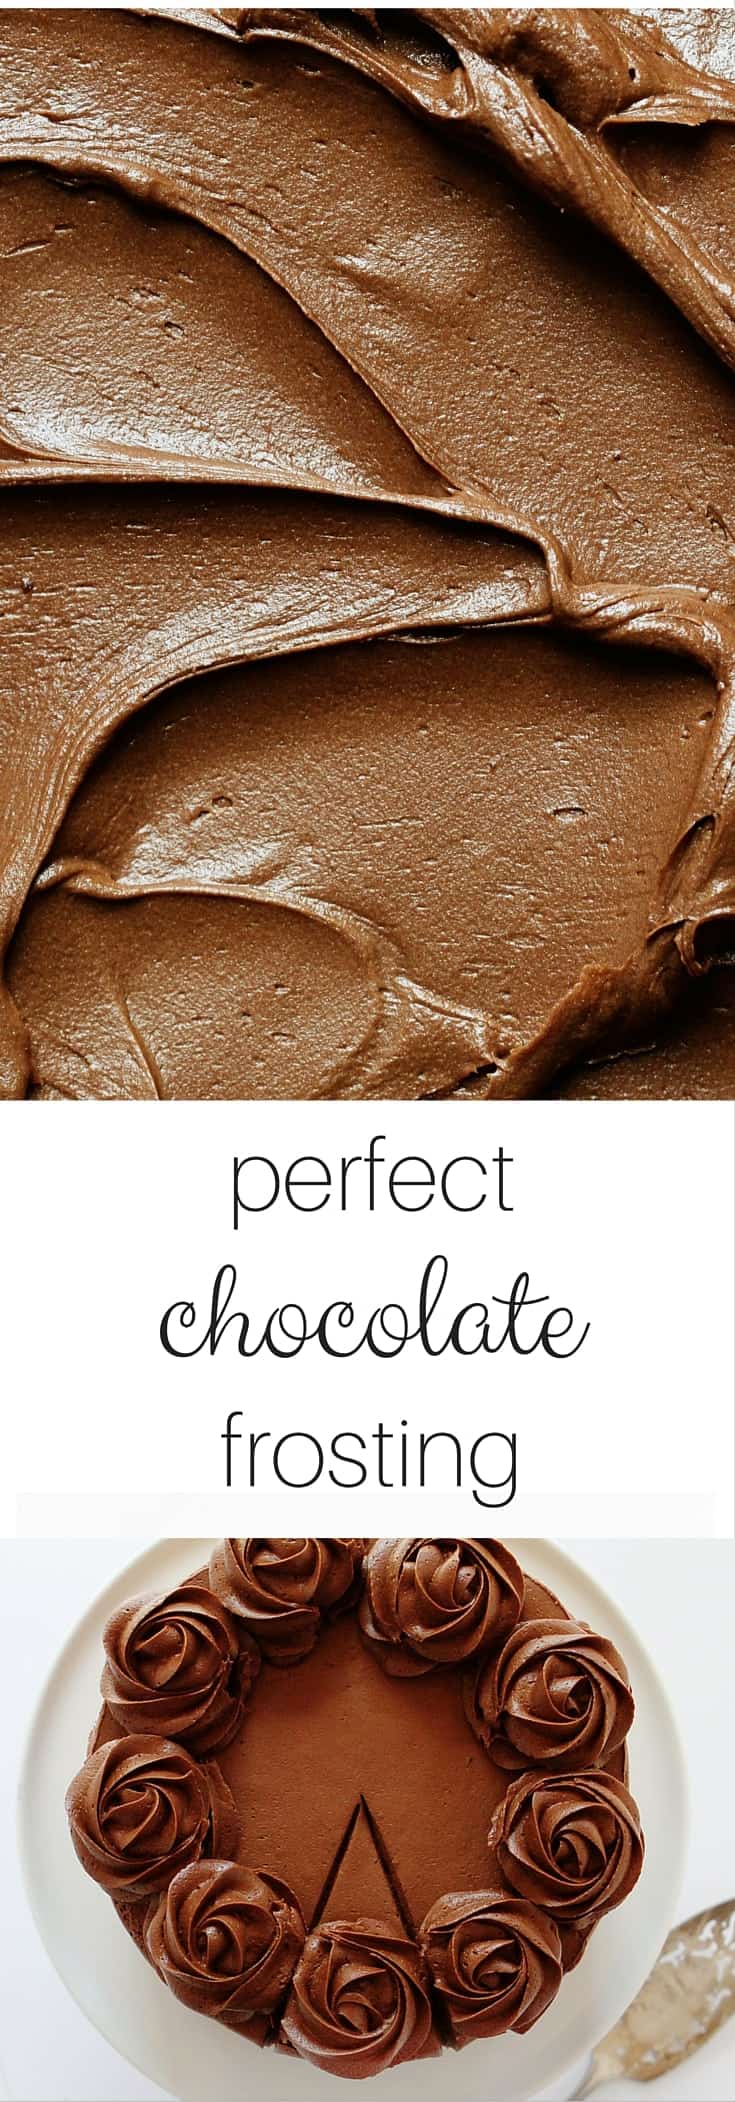 完美的巧克力糖霜！四个独特而惊人的食谱。这是您需要的唯一巧克力霜PIN！